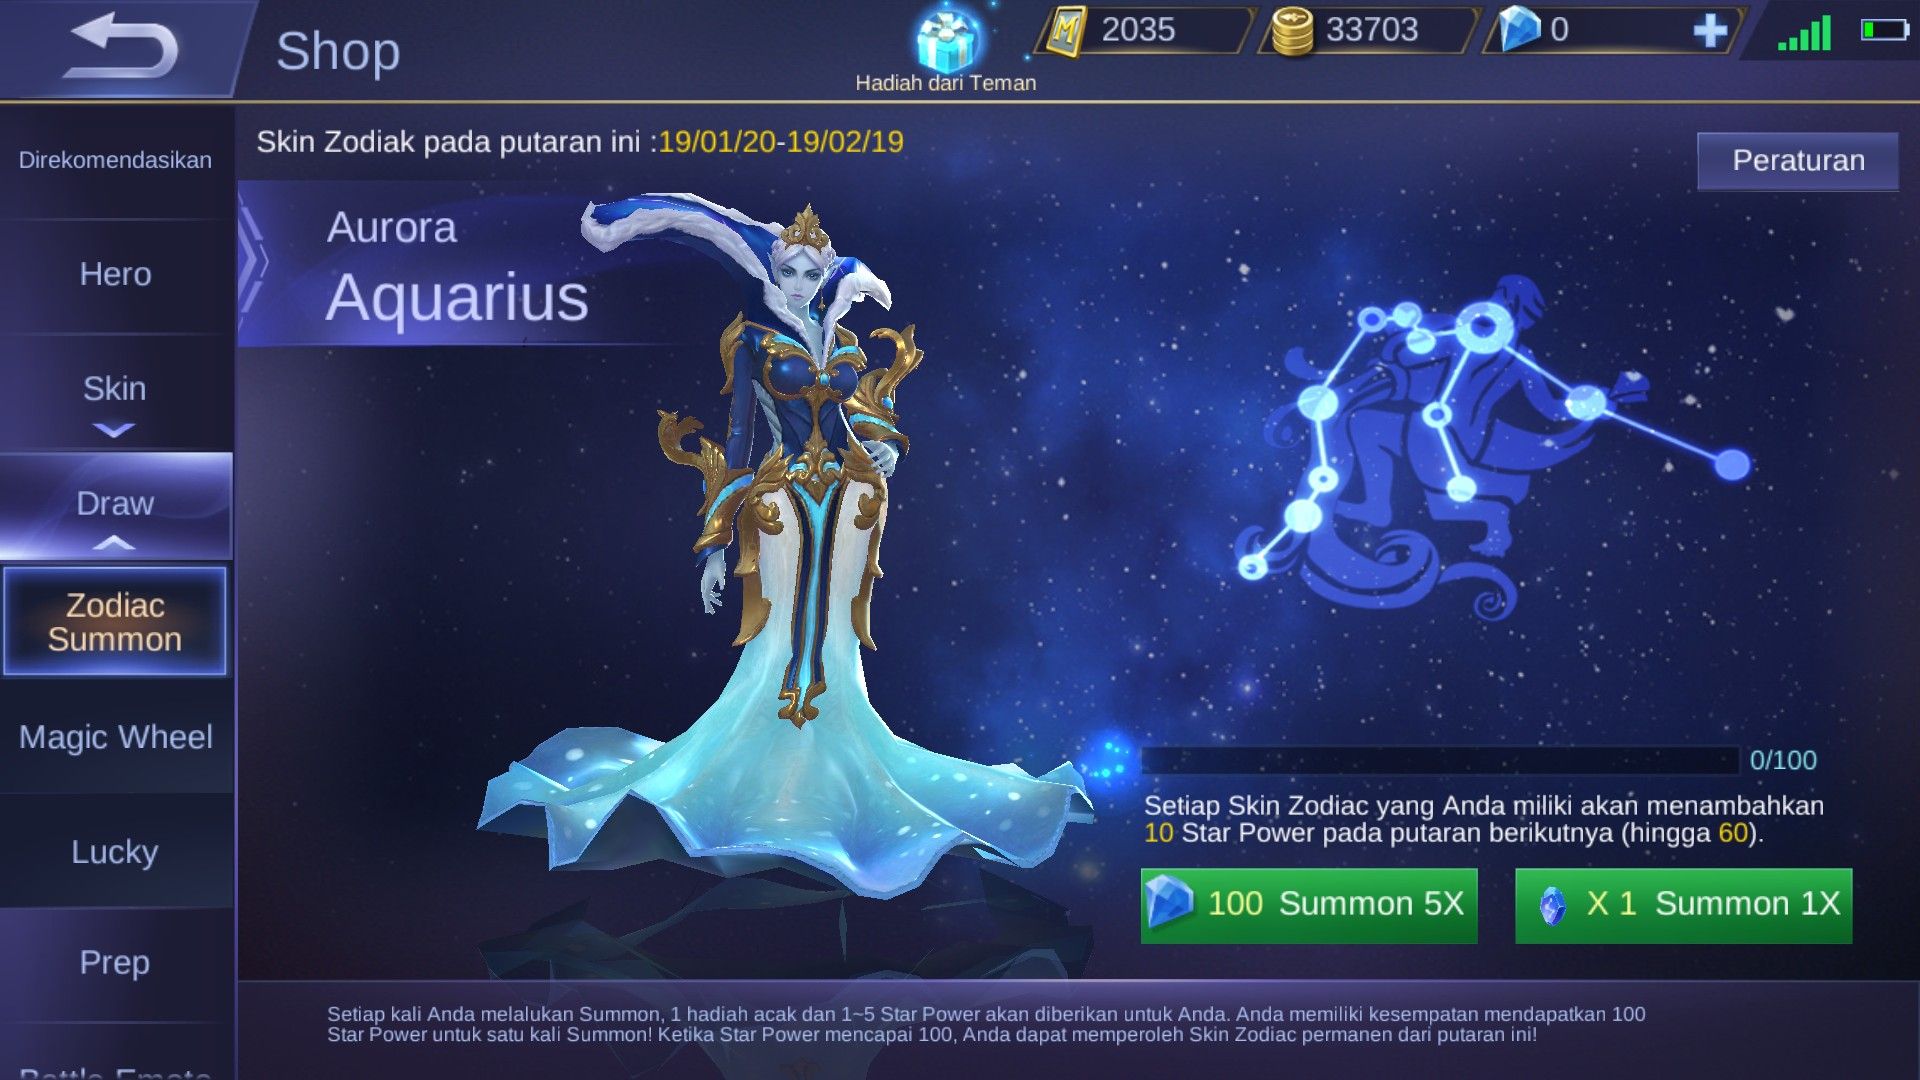 Zodiak Summon - Aquarius (Aurora)